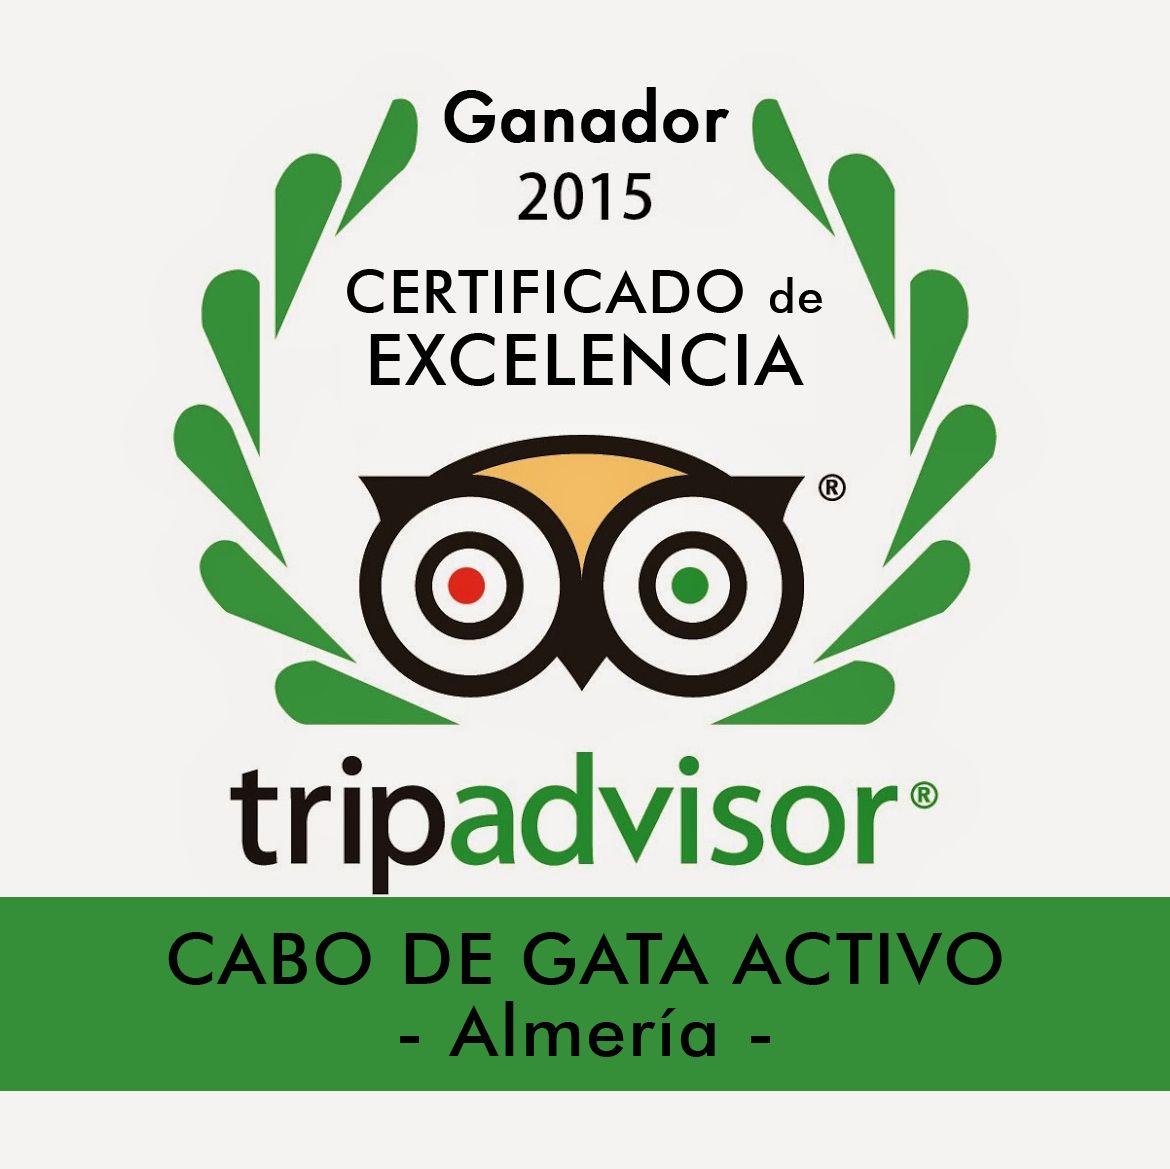 kayak Cabo de Gata Activo galardonado con el Certificado de Excelencia de Tripadvisor 2015